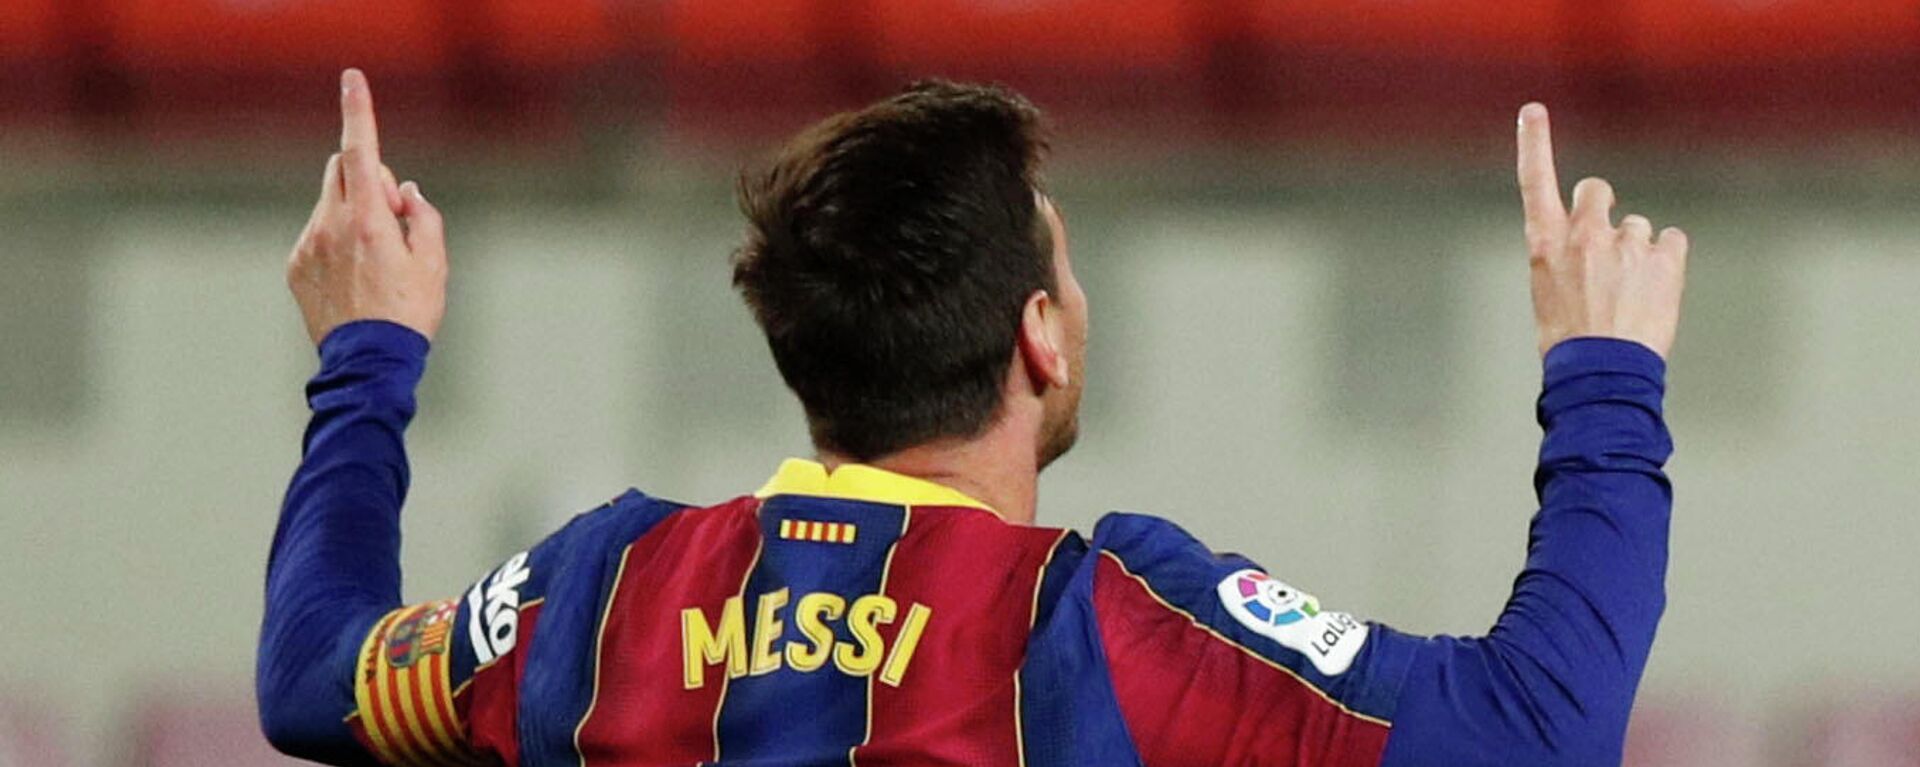 Lionel Messi, futbolista argentino - Sputnik Mundo, 1920, 04.05.2021